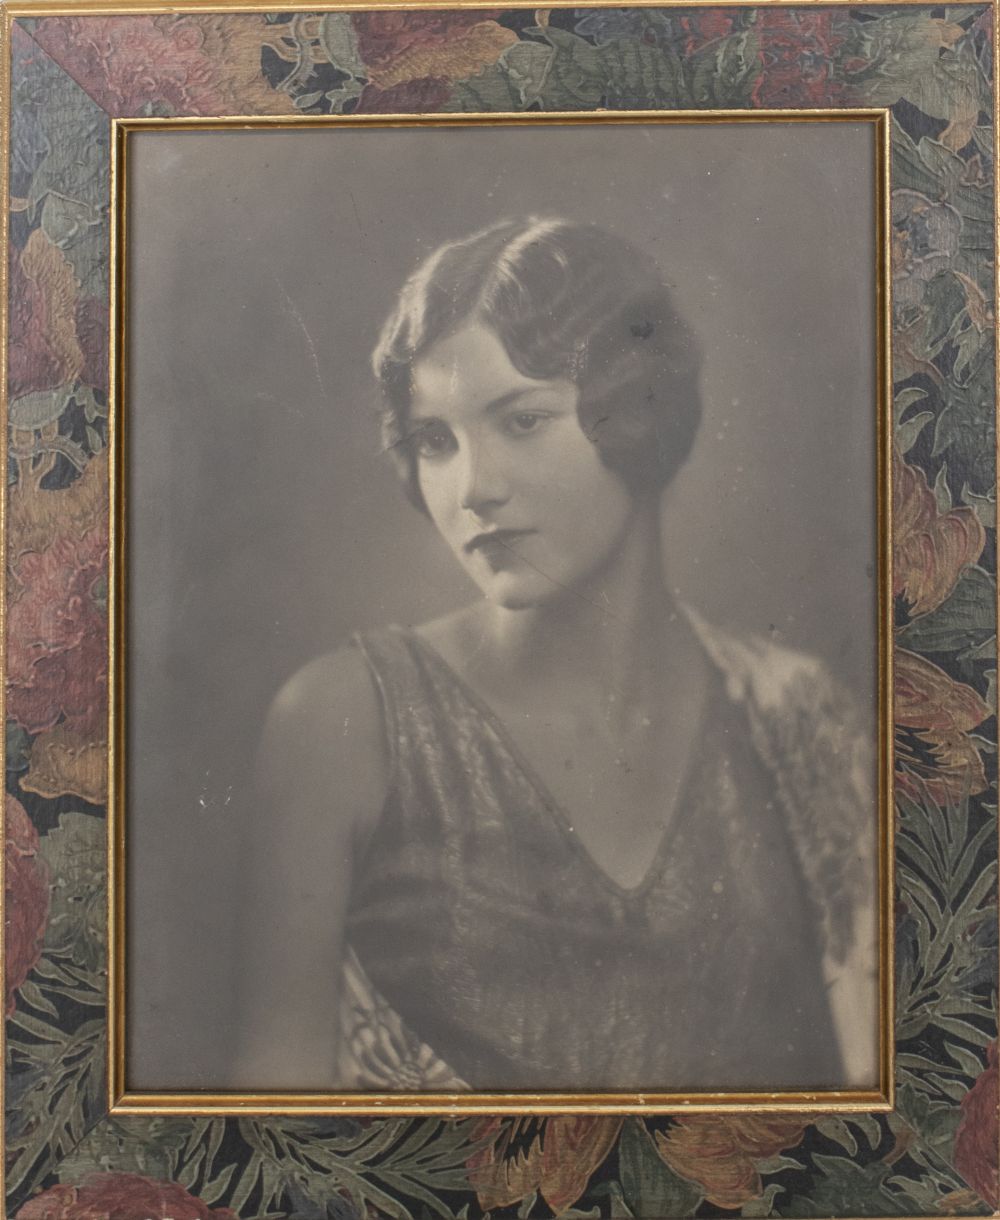 1920S PORTRAIT OF A WOMAN 1920s